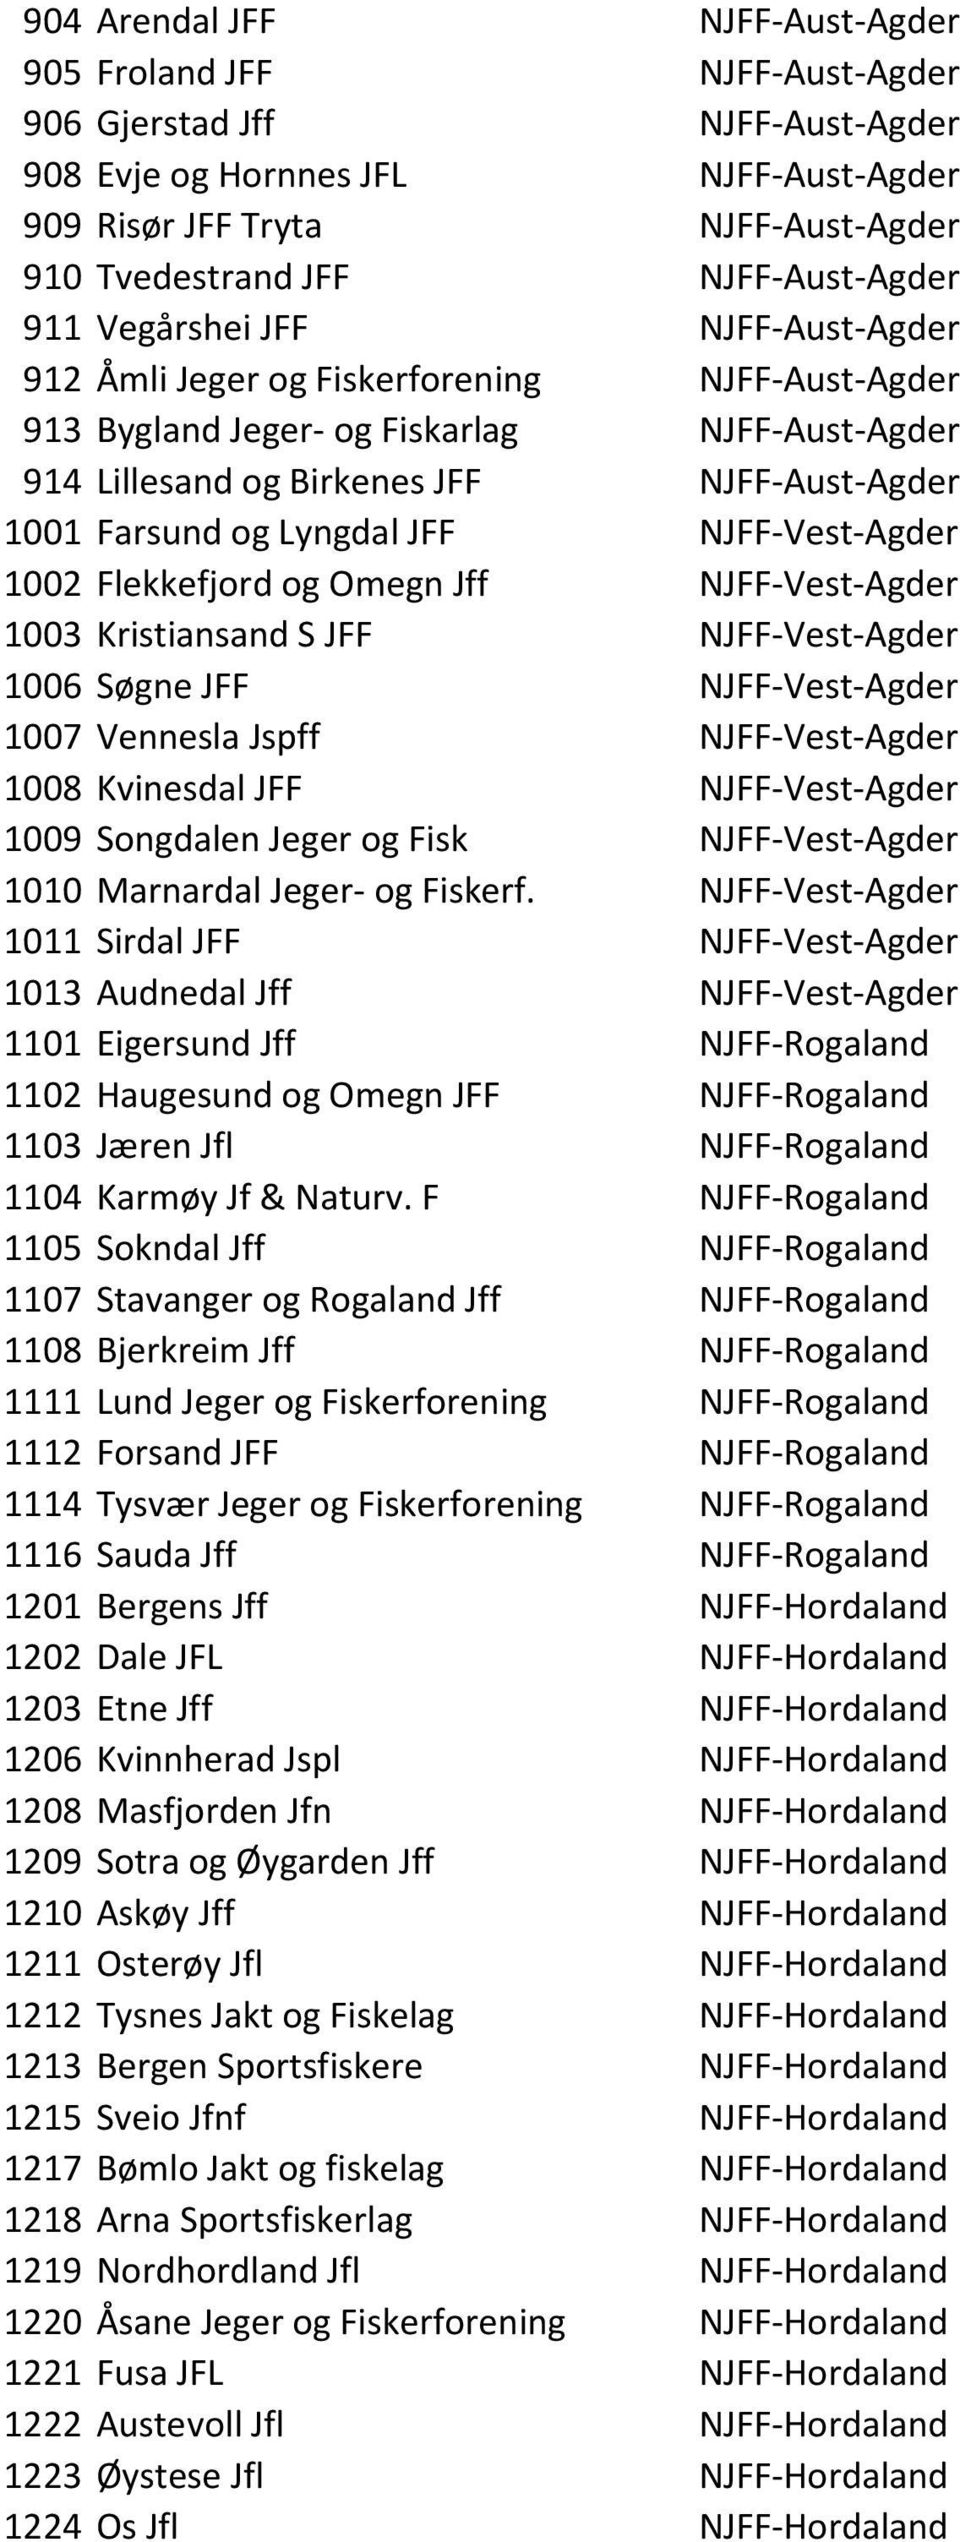 Farsund og Lyngdal JFF NJFF-Vest-Agder 1002 Flekkefjord og Omegn Jff NJFF-Vest-Agder 1003 Kristiansand S JFF NJFF-Vest-Agder 1006 Søgne JFF NJFF-Vest-Agder 1007 Vennesla Jspff NJFF-Vest-Agder 1008